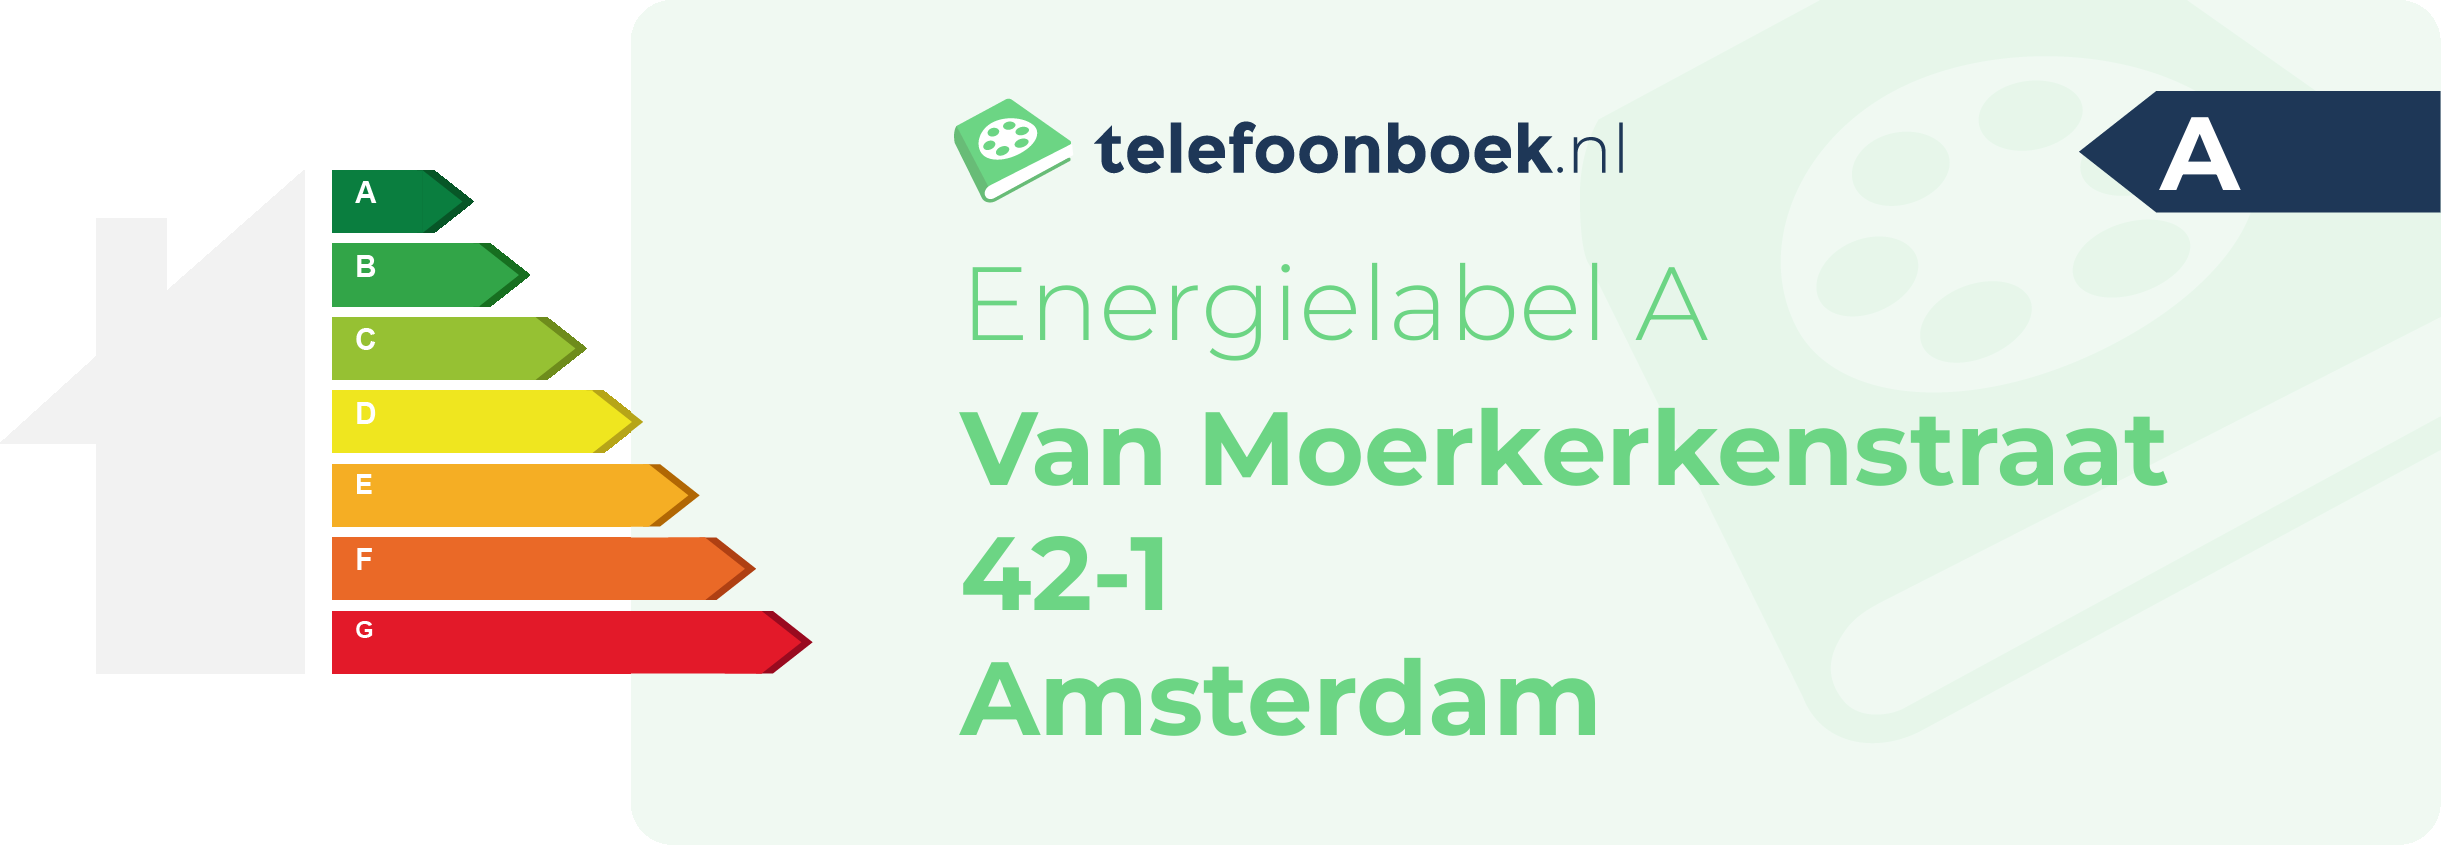 Energielabel Van Moerkerkenstraat 42-1 Amsterdam